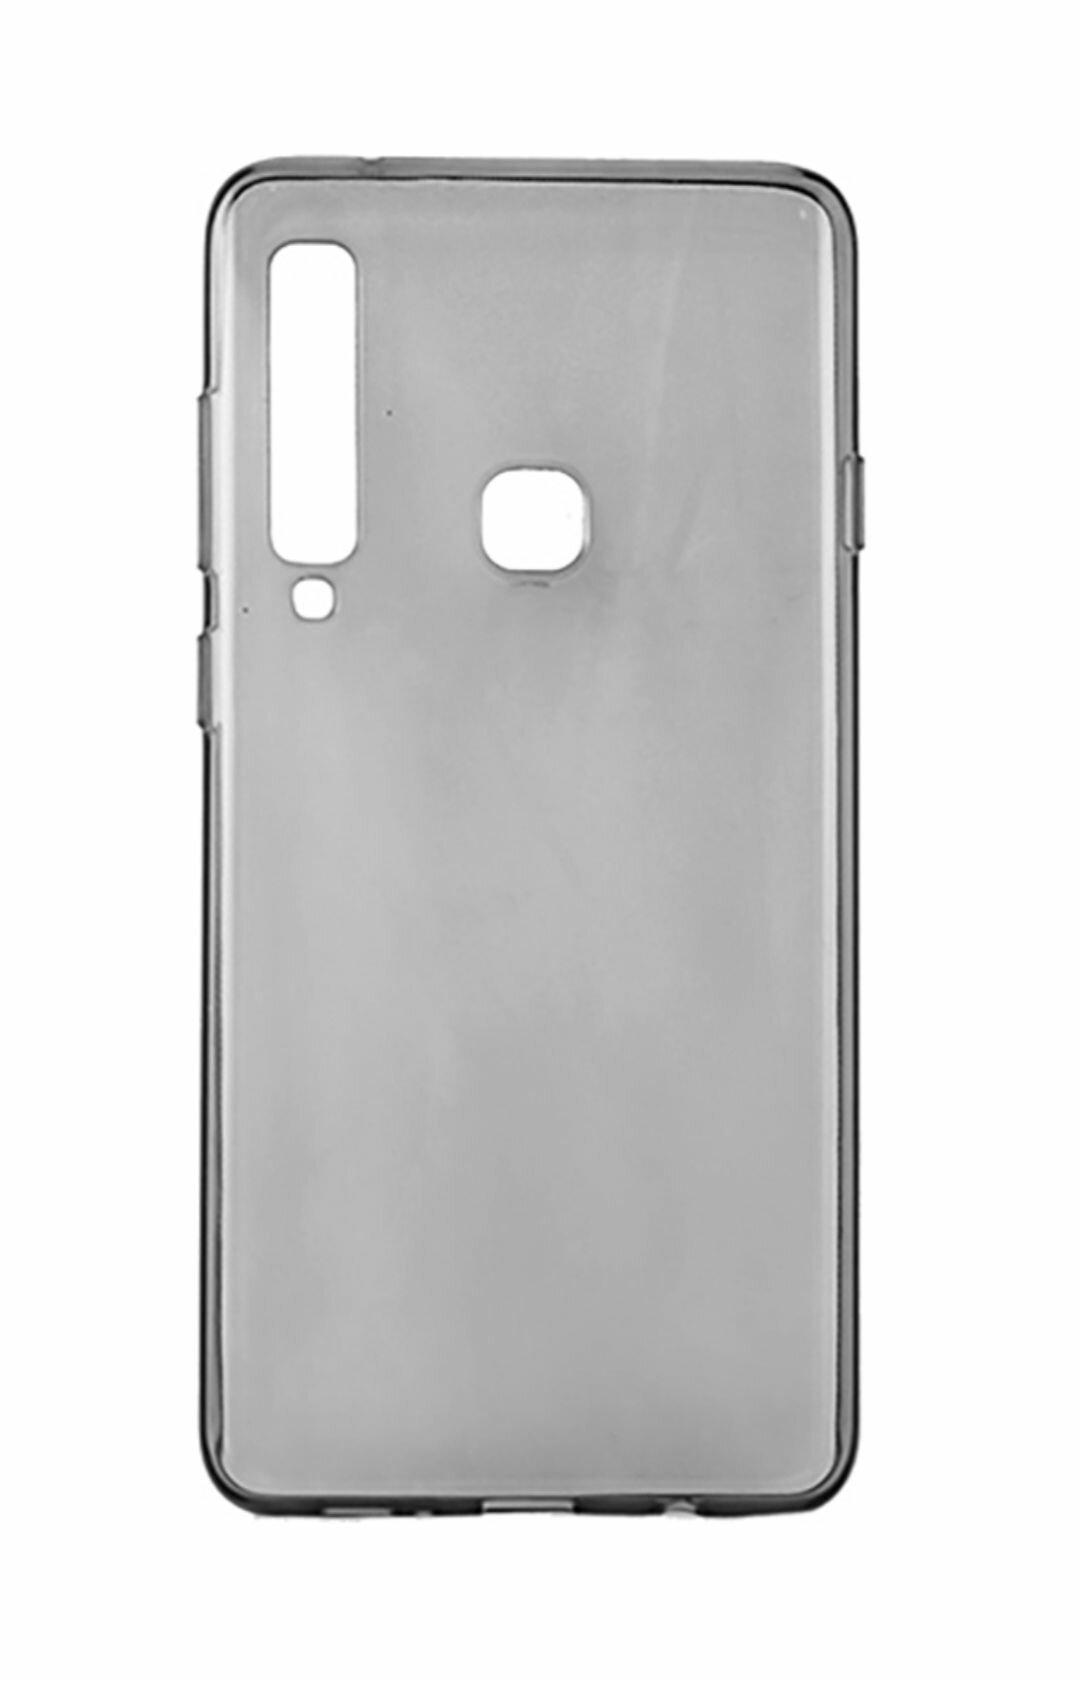 Samsung Galaxy A9 2018, A920 Силиконовый темно-прозрачный чехол для Самсунг галакси А9 бампер накладка